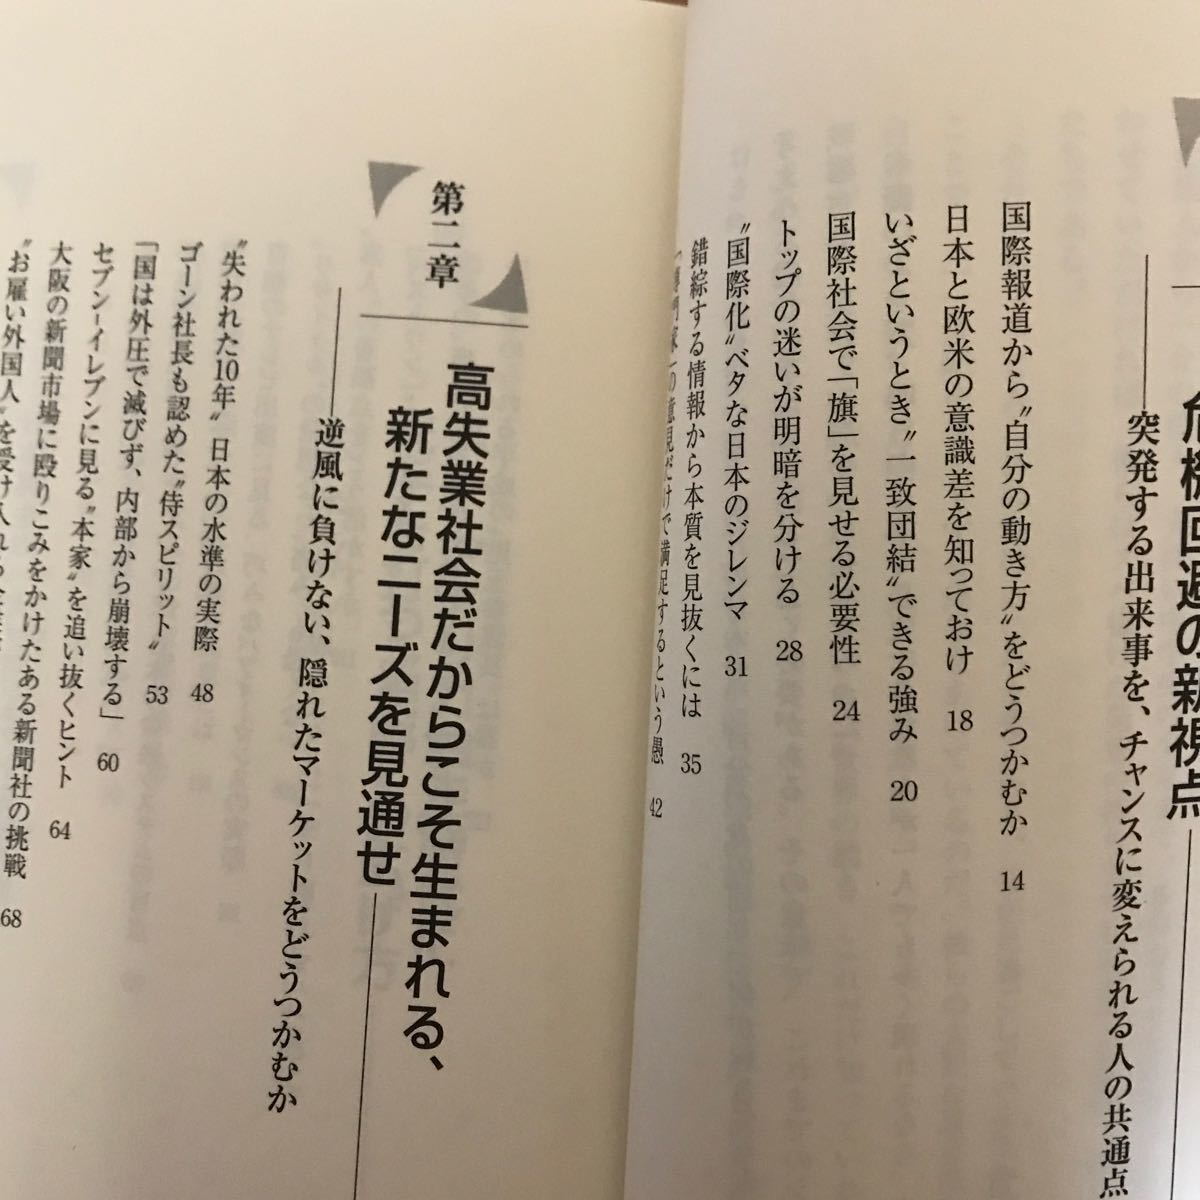 7a 竹村健一　2冊セット 世界の動きこれだけ知っていればいい〈2001年版〉 「変わる日本」で必要とされる人〈2002年版〉単行本_画像4